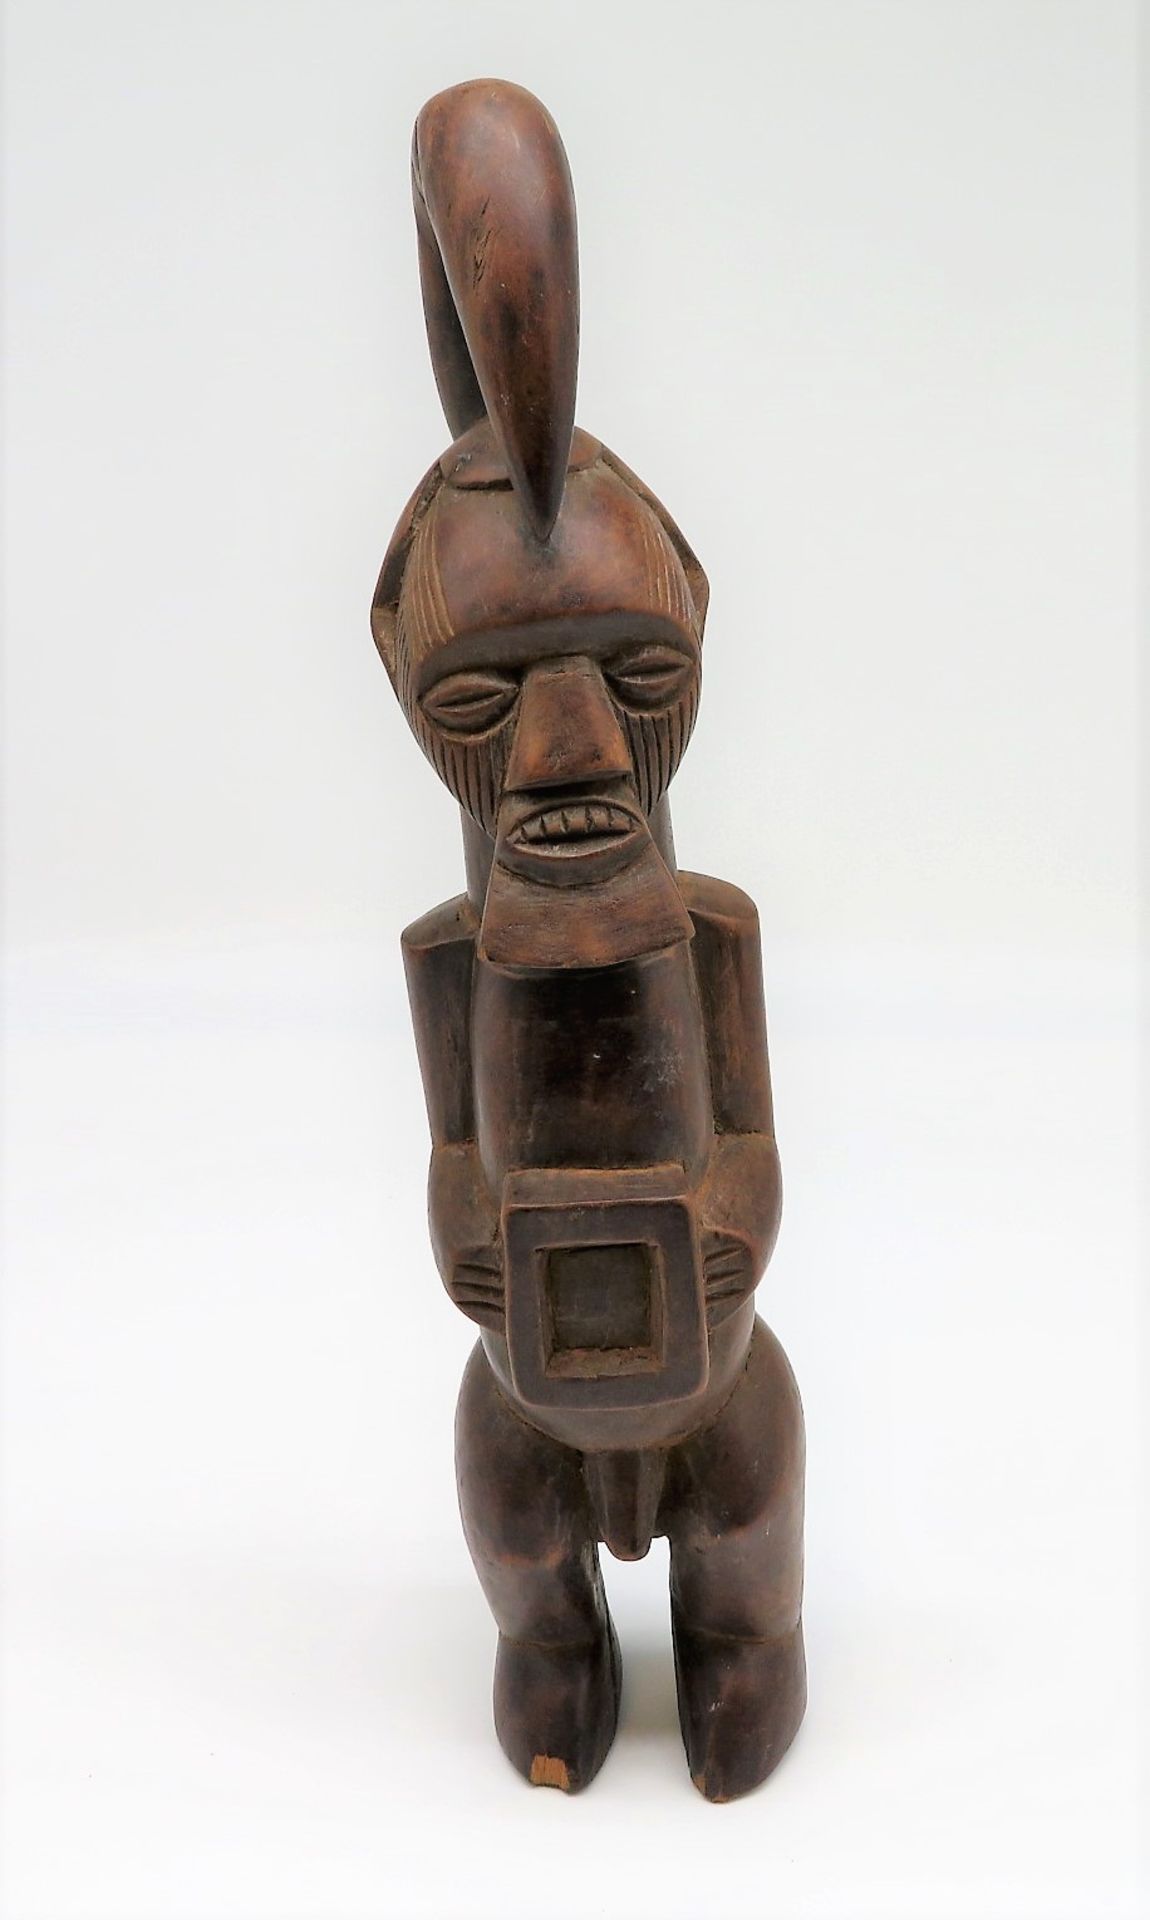 Ahnenfigur, Afrika, Stehender, Holz geschnitzt, h 37 cm, d 8,5 cm.